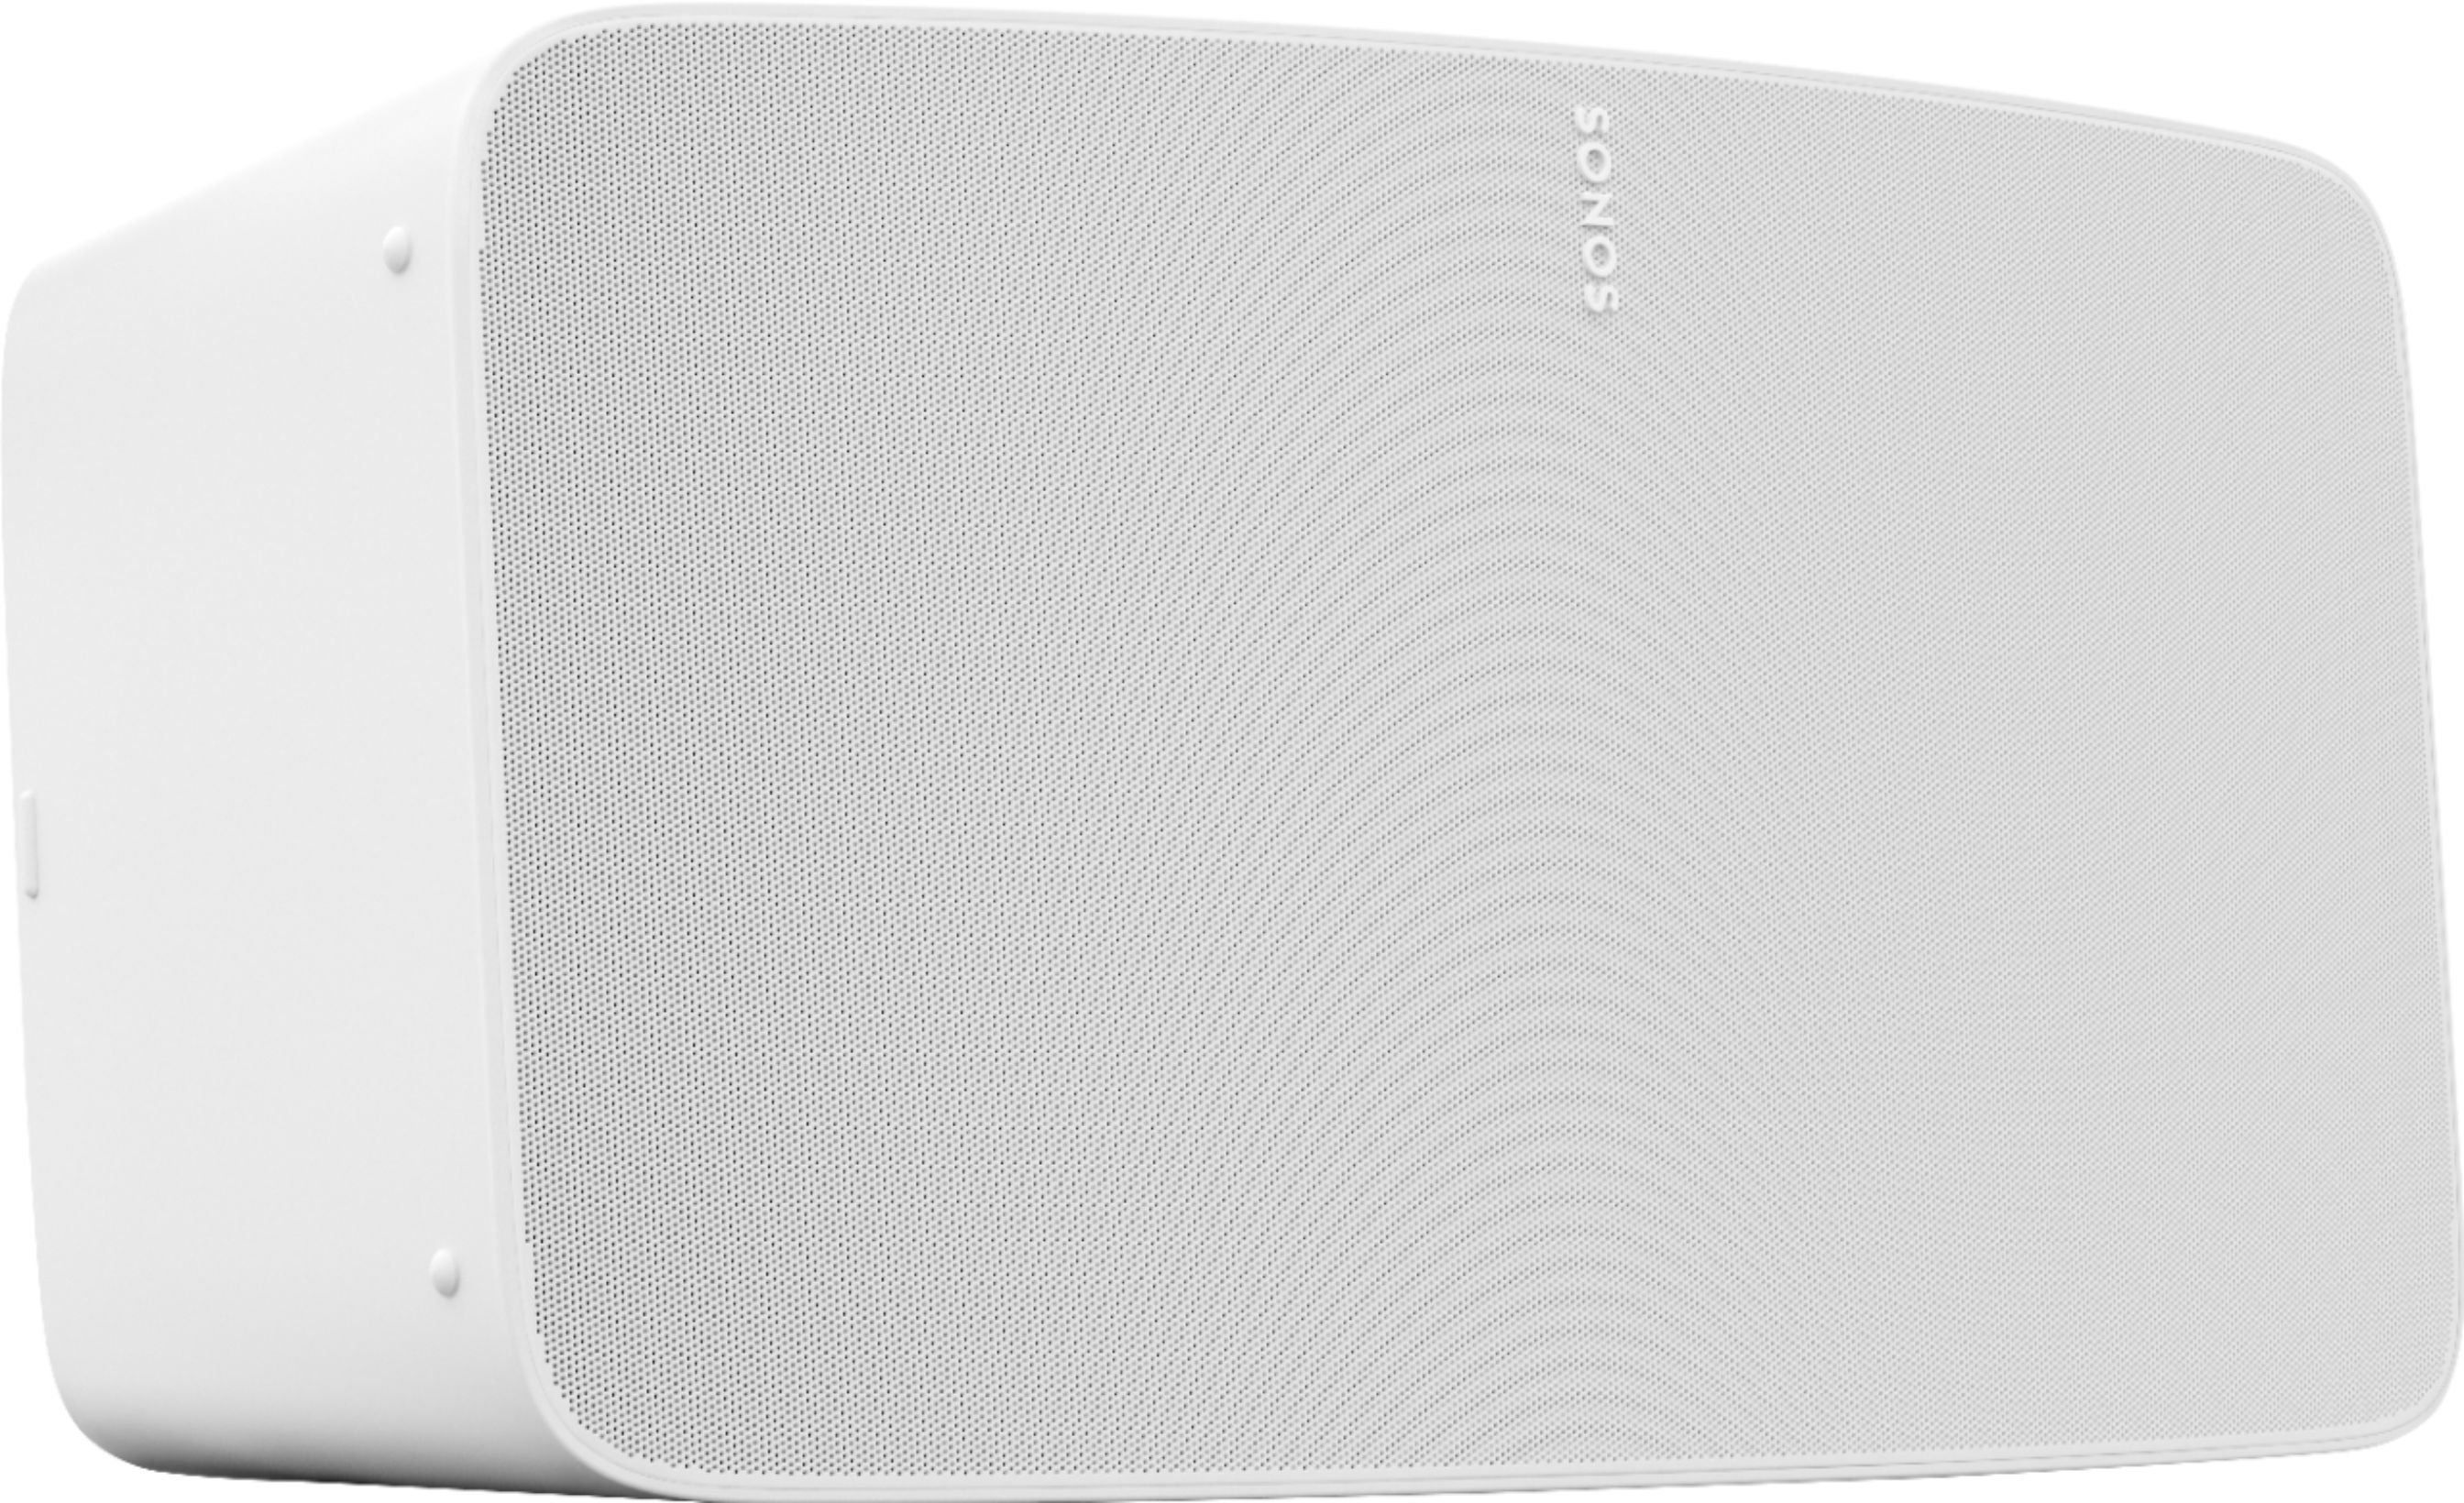 verkiezen gereedschap Alsjeblieft kijk Sonos Five Wireless Smart Speaker White FIVE1US1 - Best Buy